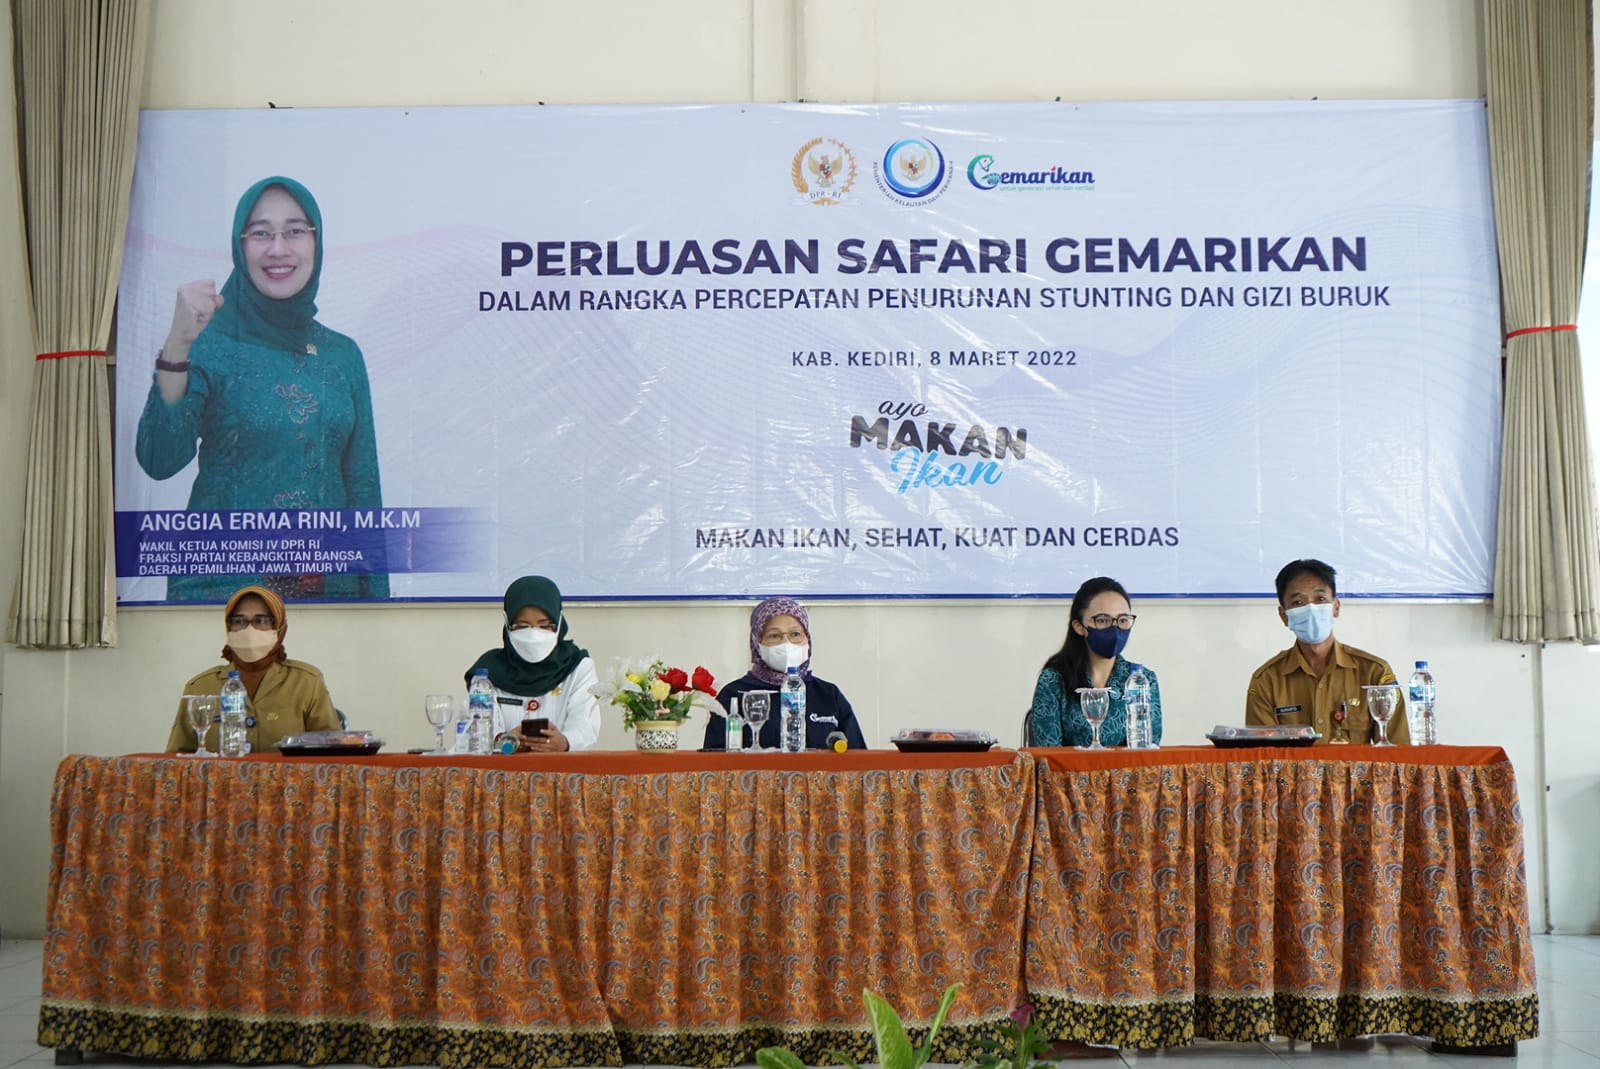 Kampanye Gemarikan di Kabupaten Kediri